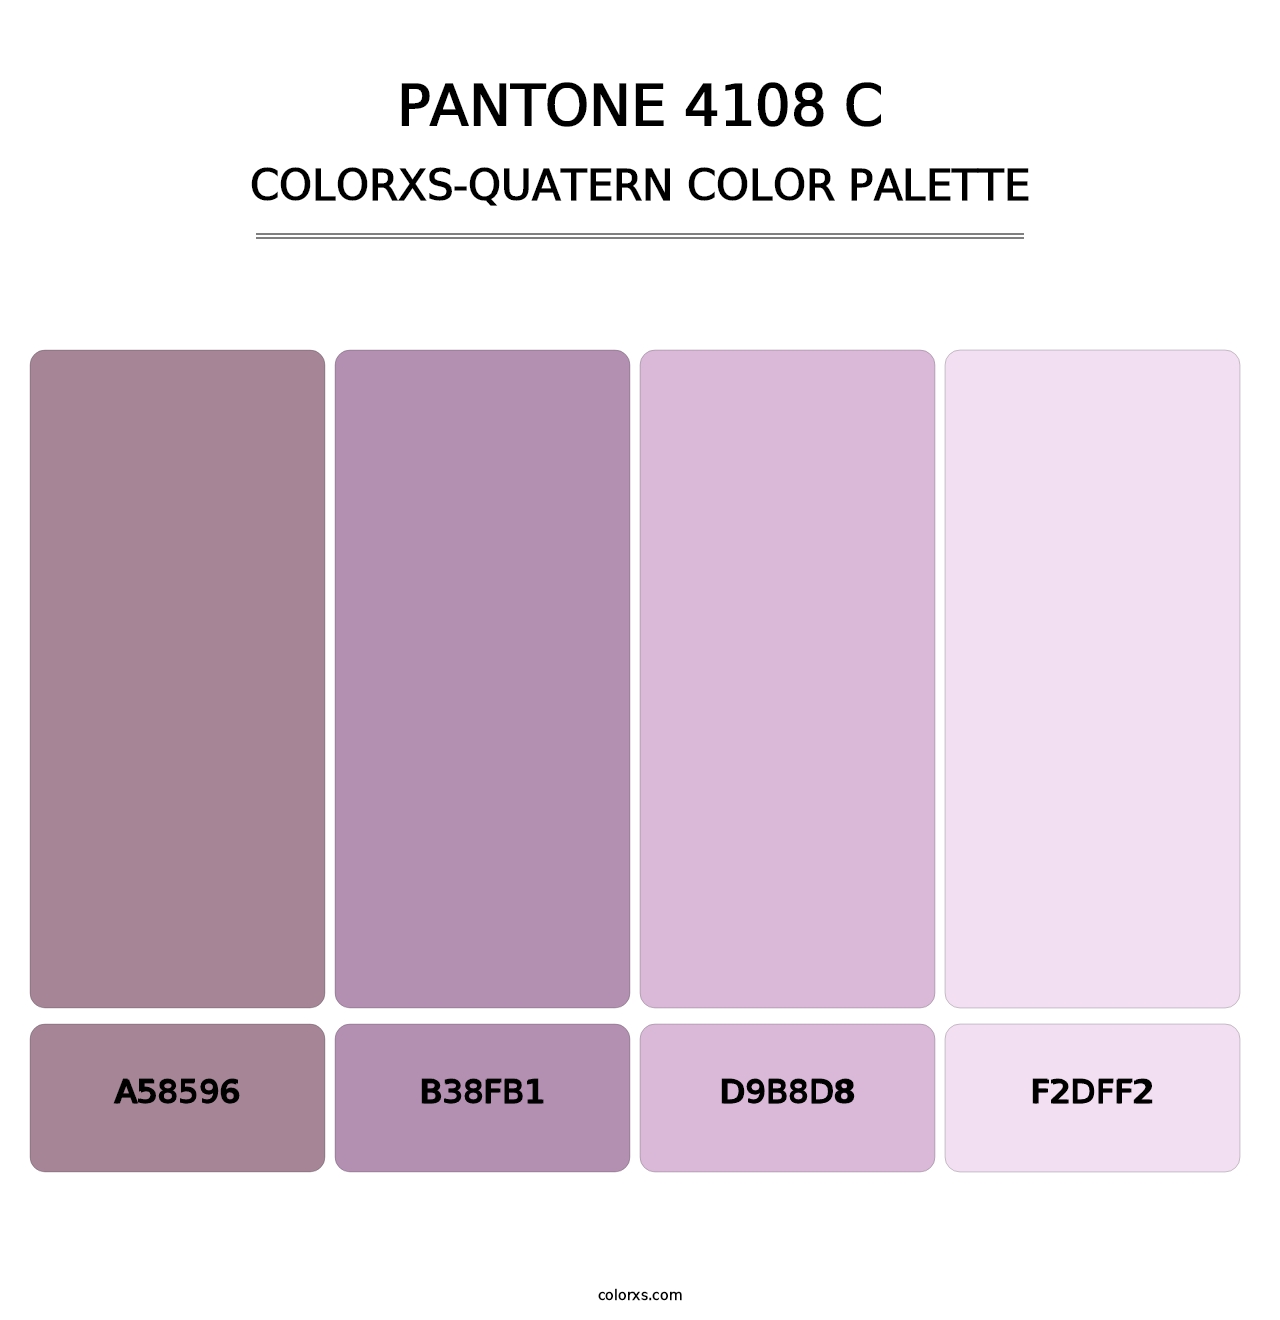 PANTONE 4108 C - Colorxs Quatern Palette